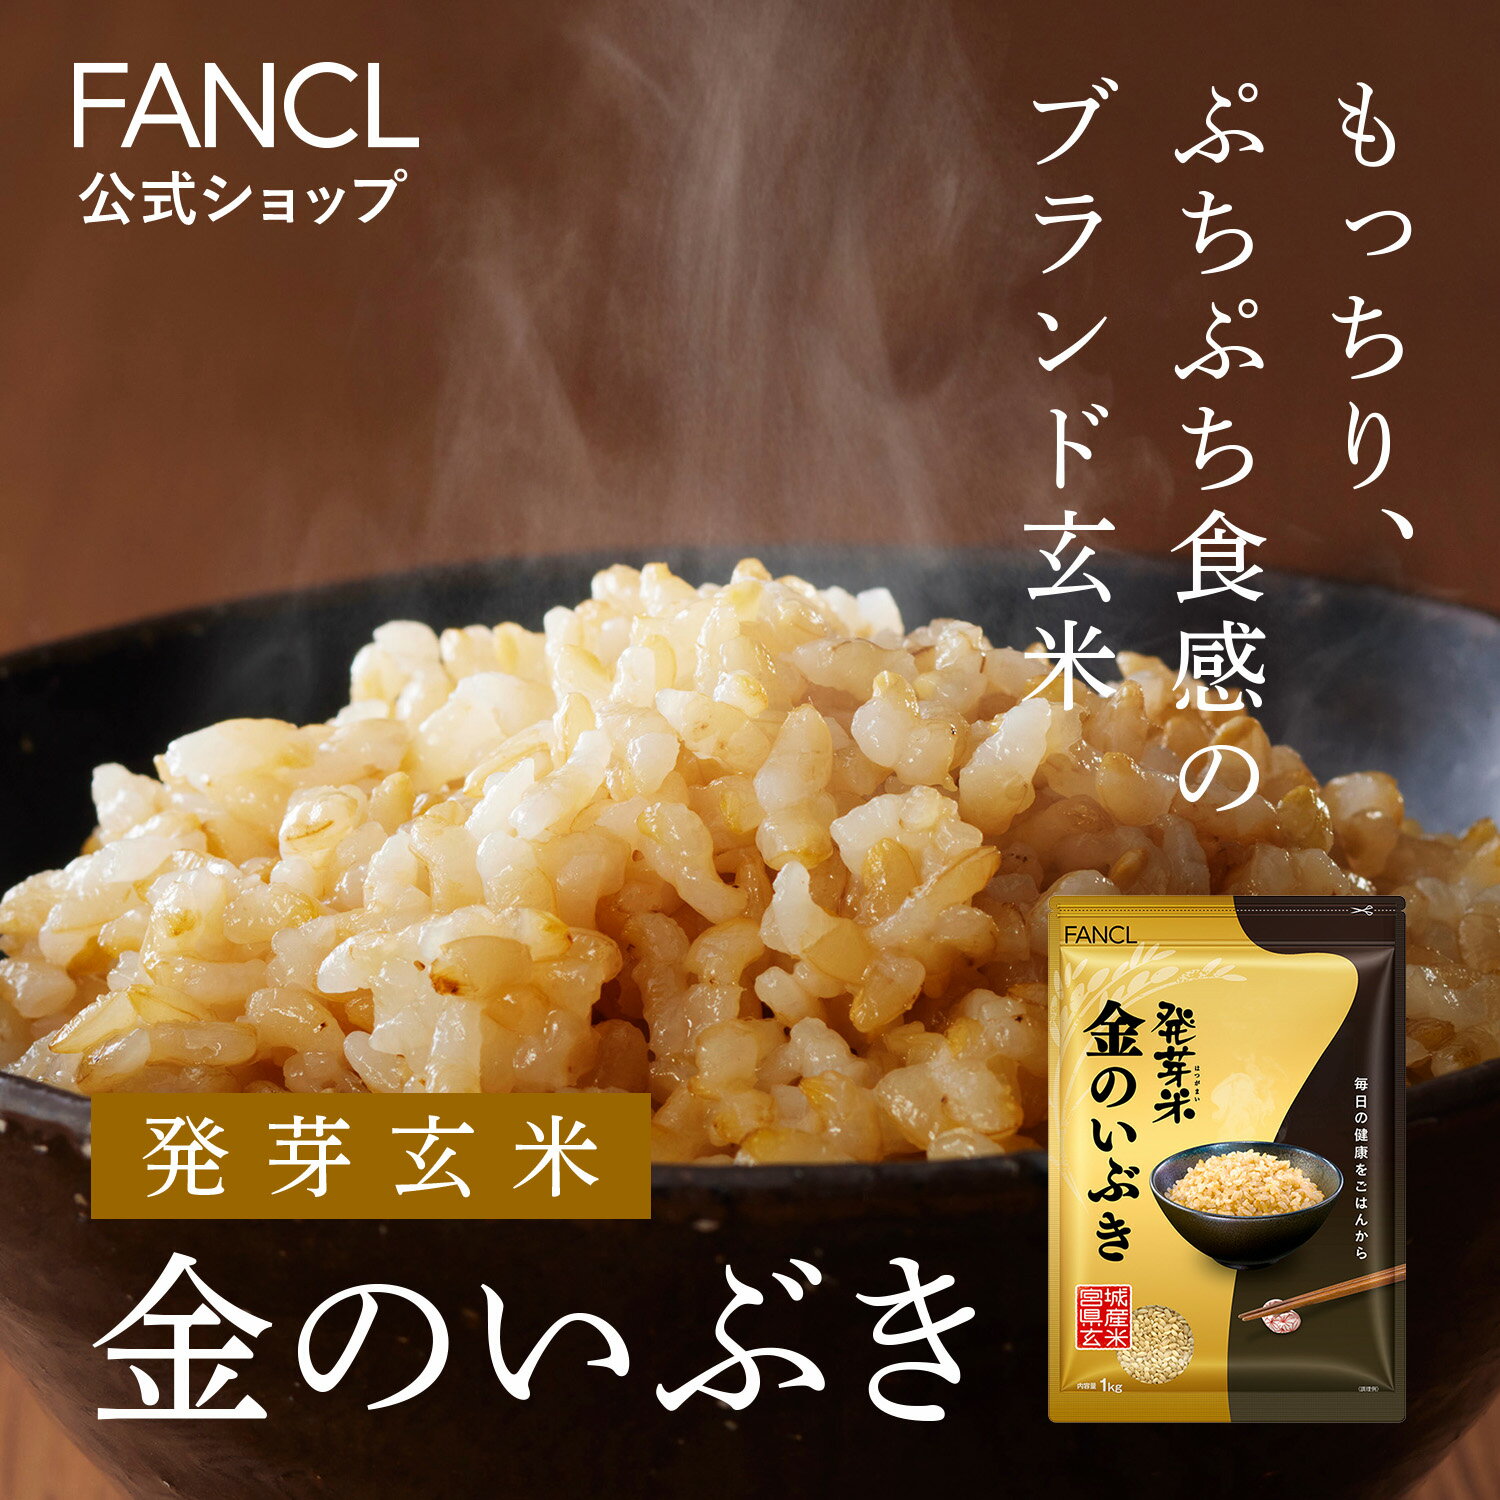 発芽米 金のいぶき 1kg 【ファンケル